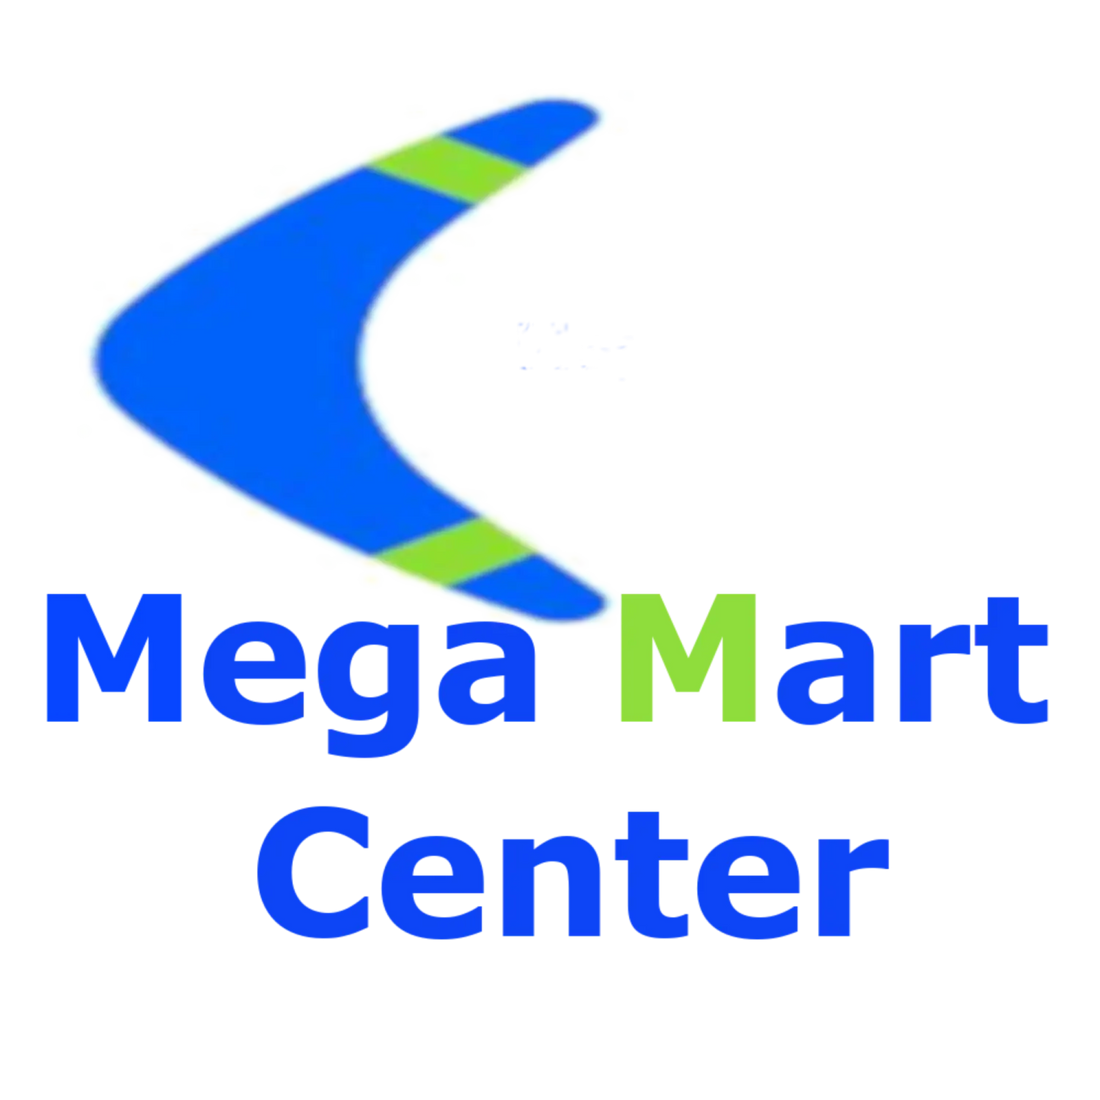 Mega Mart Center Online Store